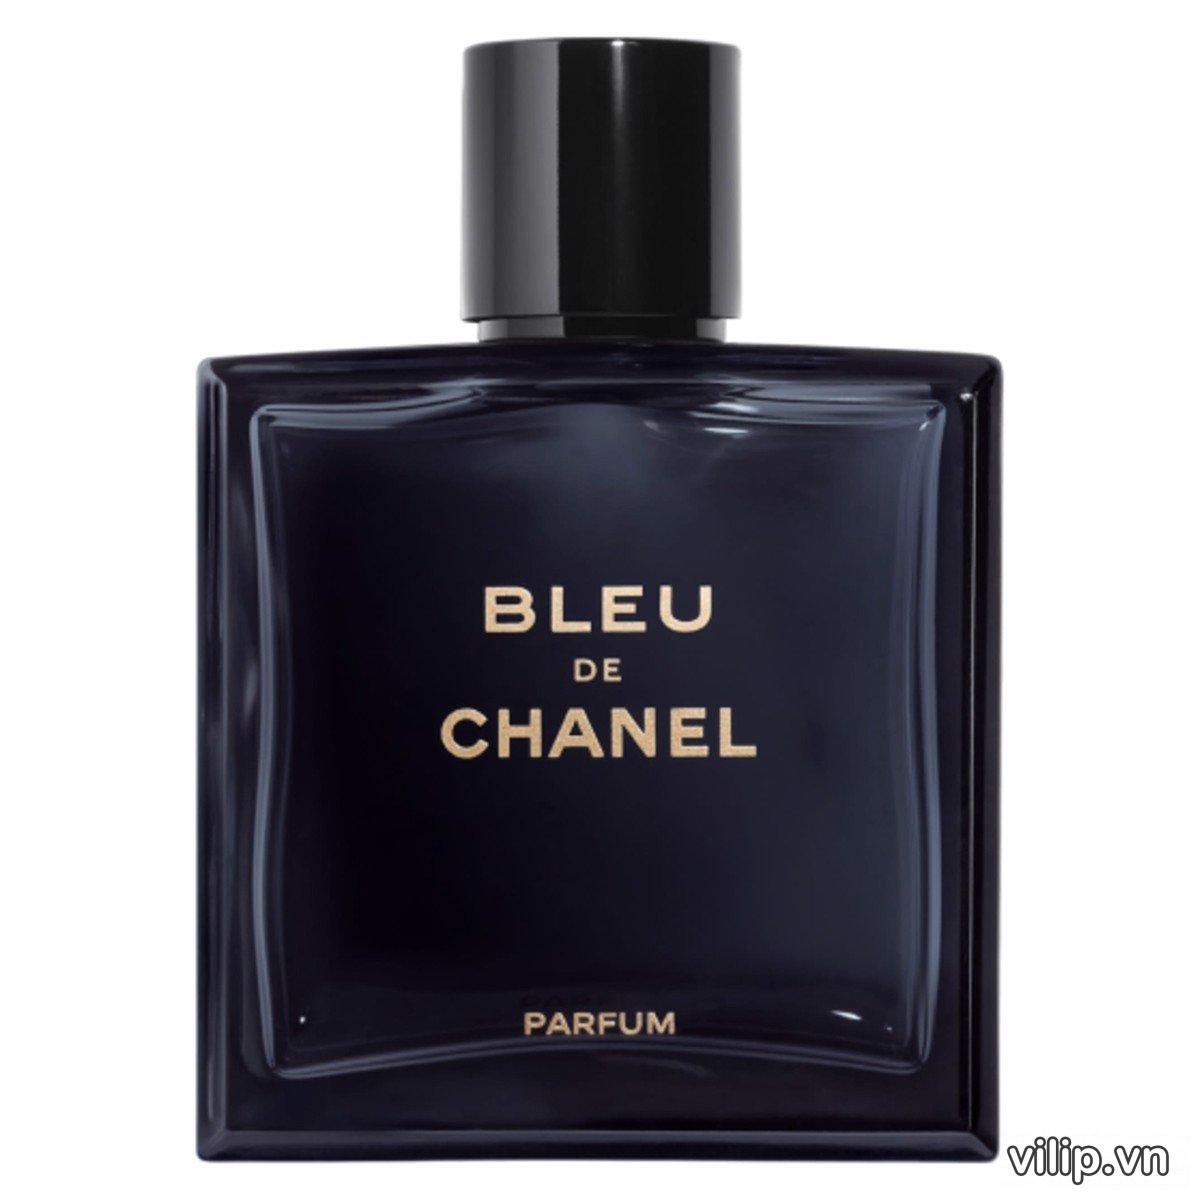 Nước hoa bleu de chanel parfum sự quyến rũ ngọt ngào  Mifashop